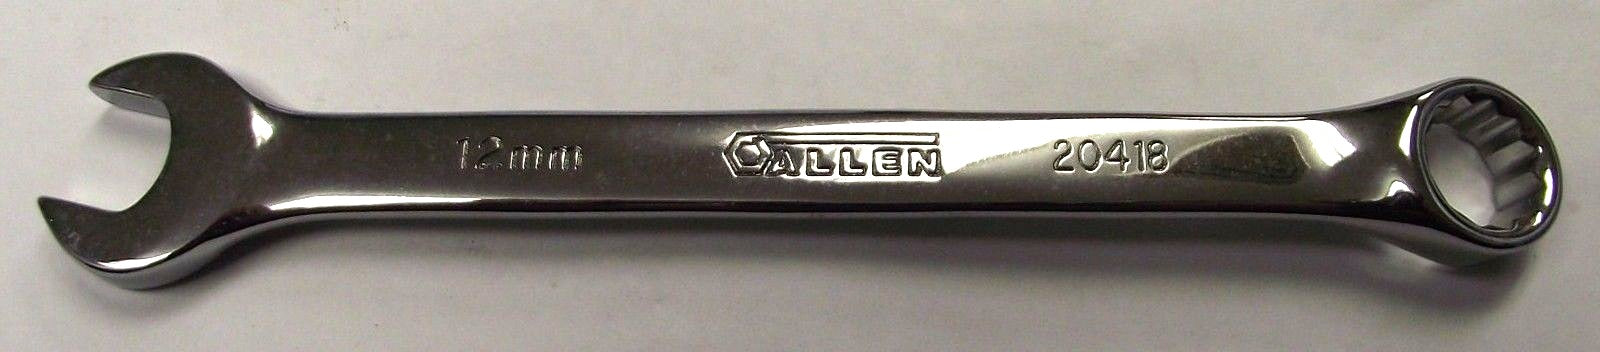 Allen 20418 Metric 12mm Full Polish Combo Wrench USA 12PT.